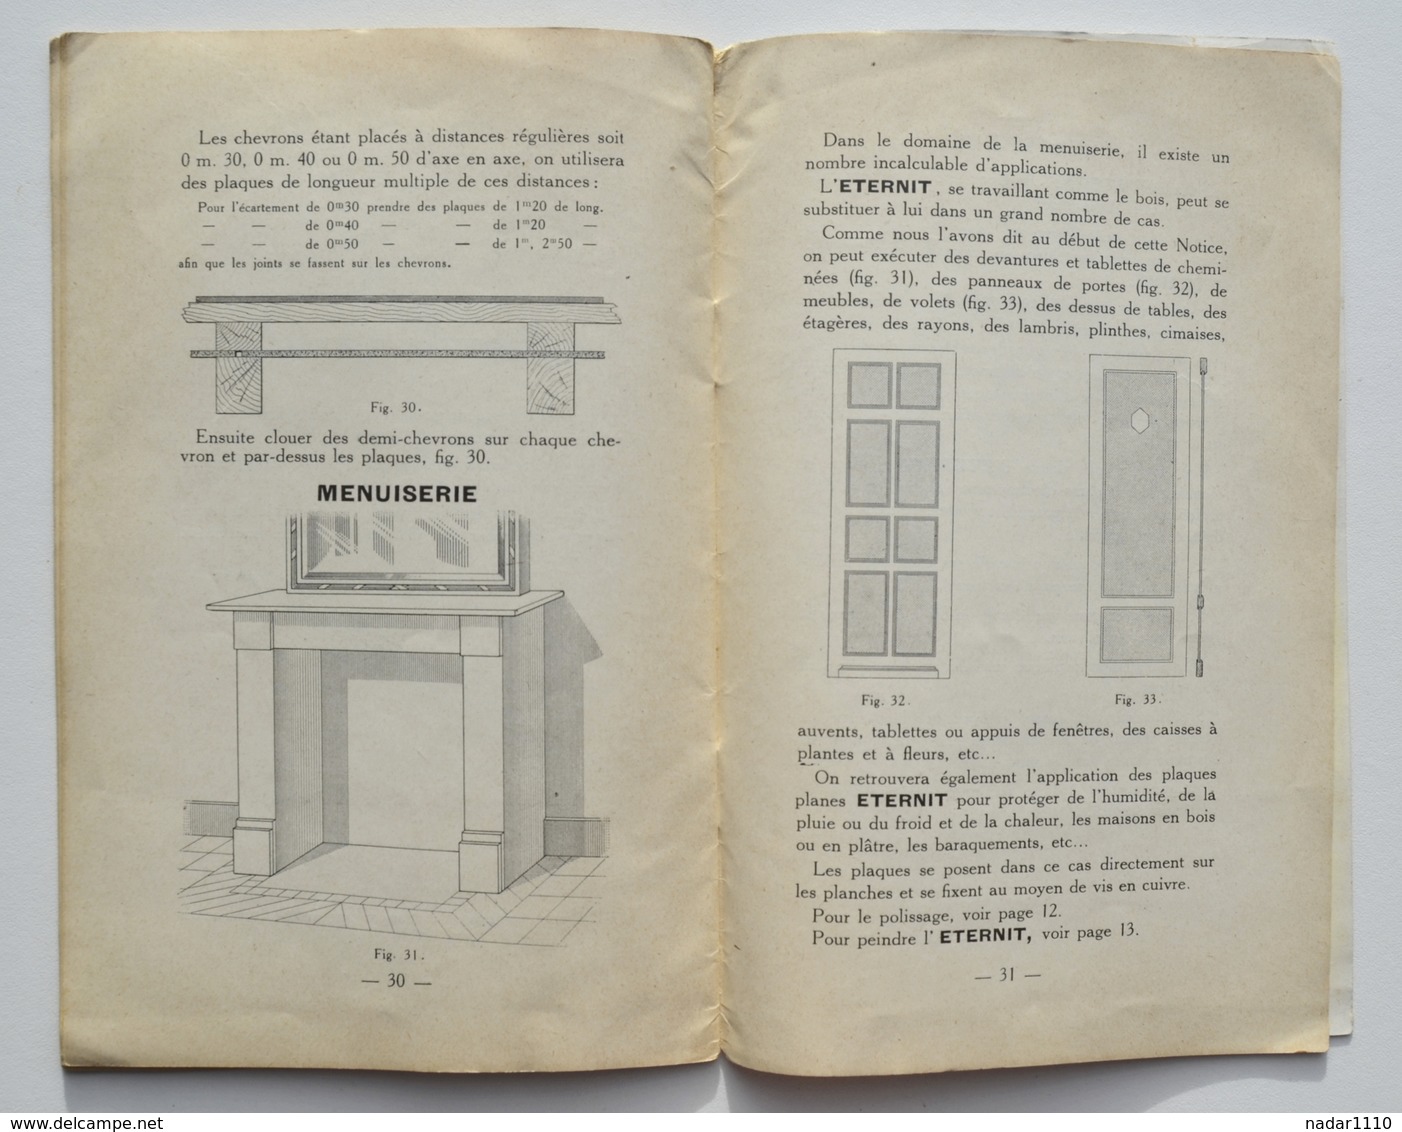 Rare brochure de ETERNIT à Cappelle-au-Bois - année 1927 / Haren, Kapelle-op-den-Bos